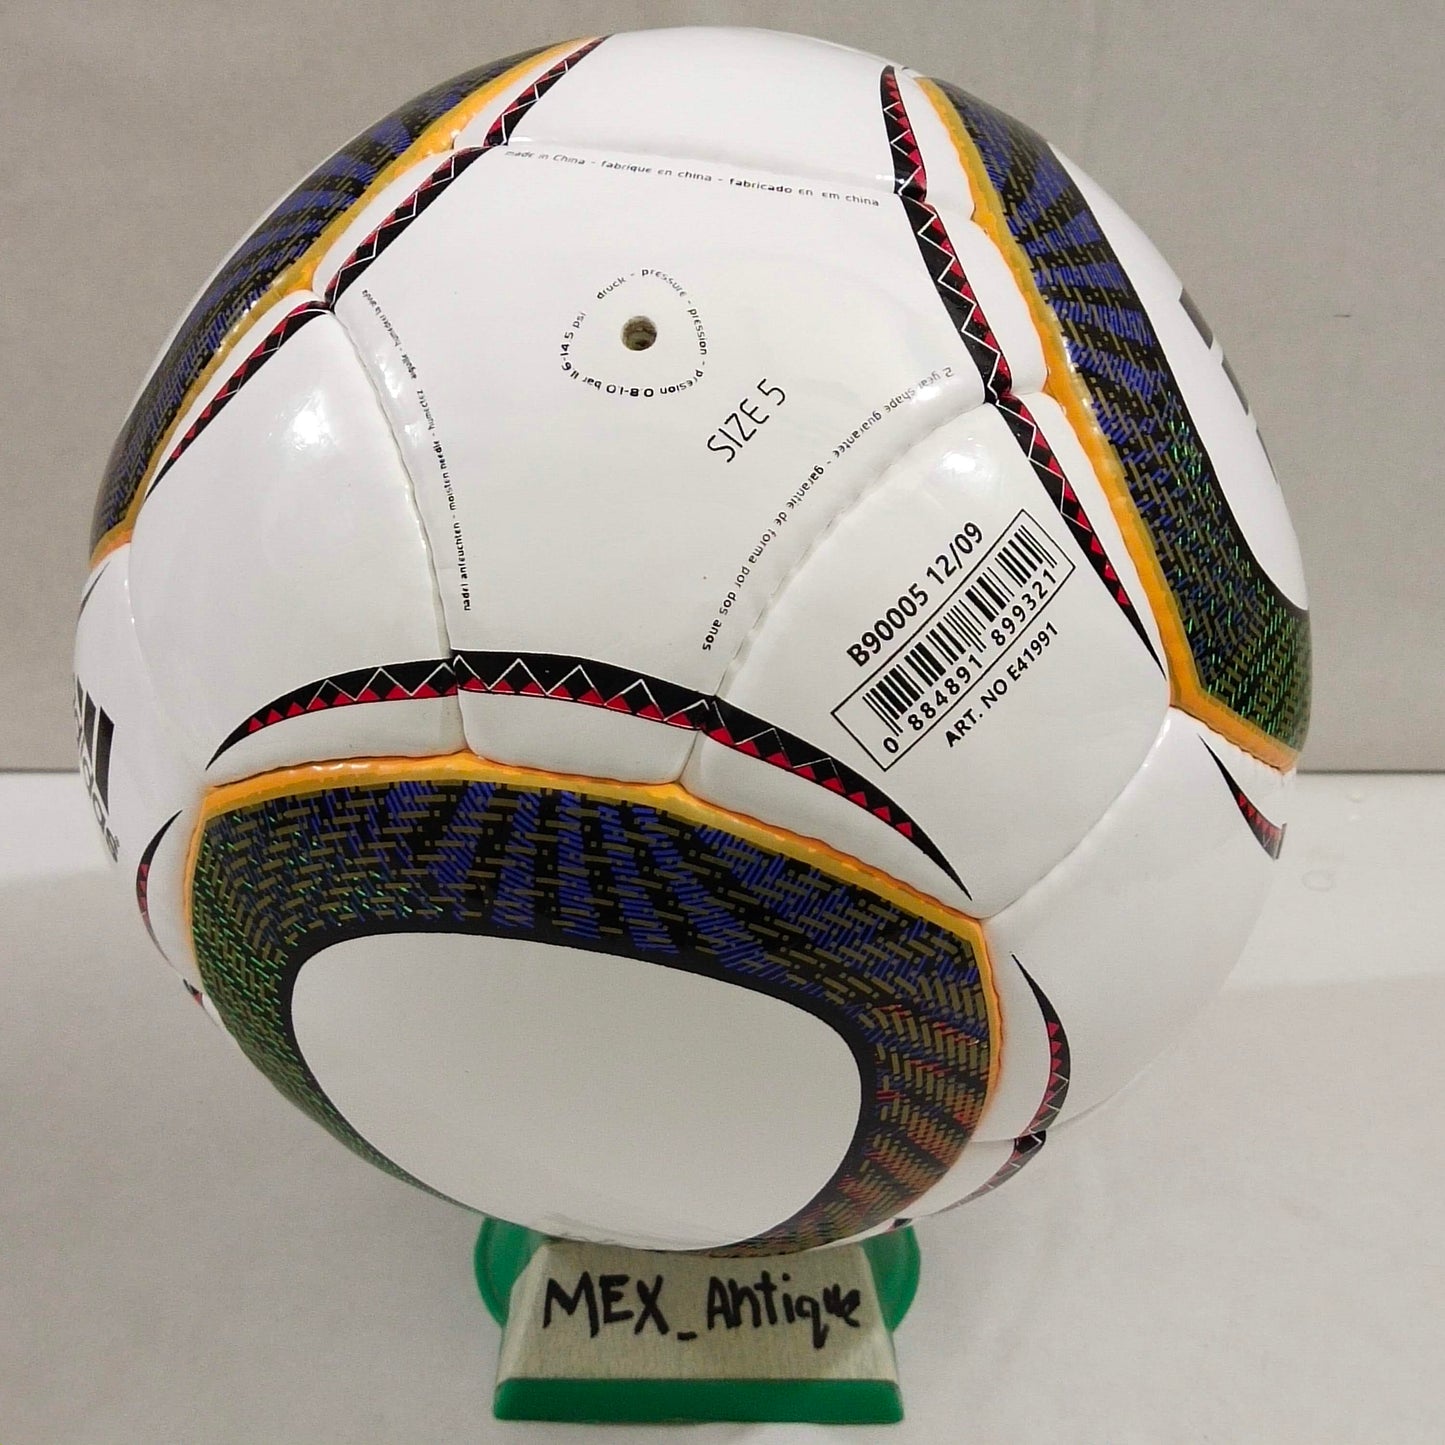 Adidas Jabulani Match Ball Glider | 2010 FIFA World Cup Ball | SIZE 5 02